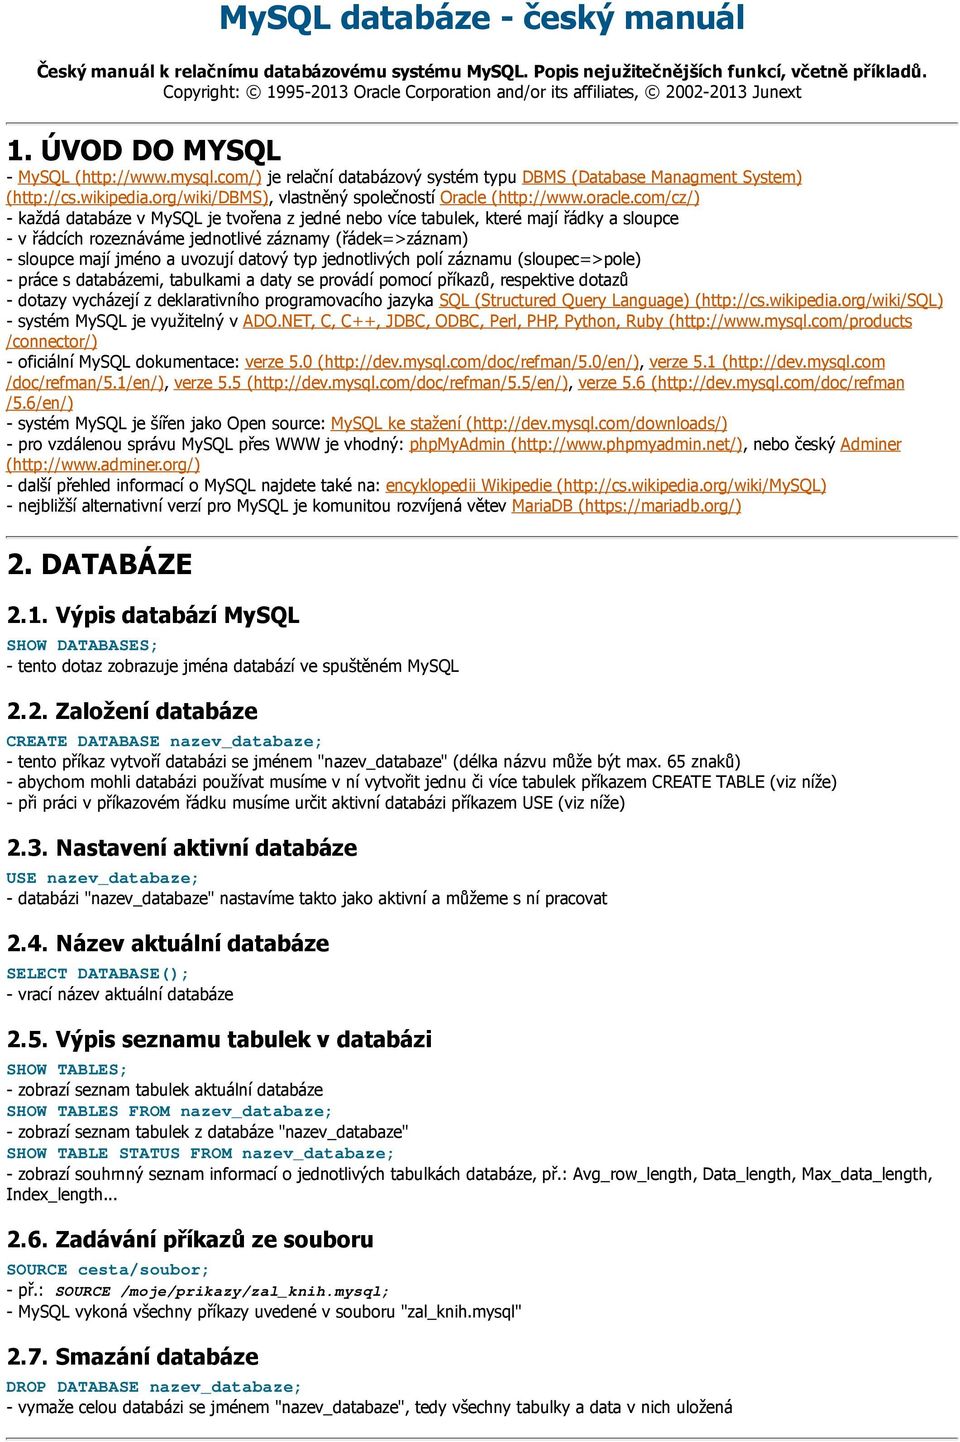 com/) je relační databázový systém typu DBMS (Database Managment System) (http://cs.wikipedia.org/wiki/dbms), vlastněný společností Oracle (http://www.oracle.